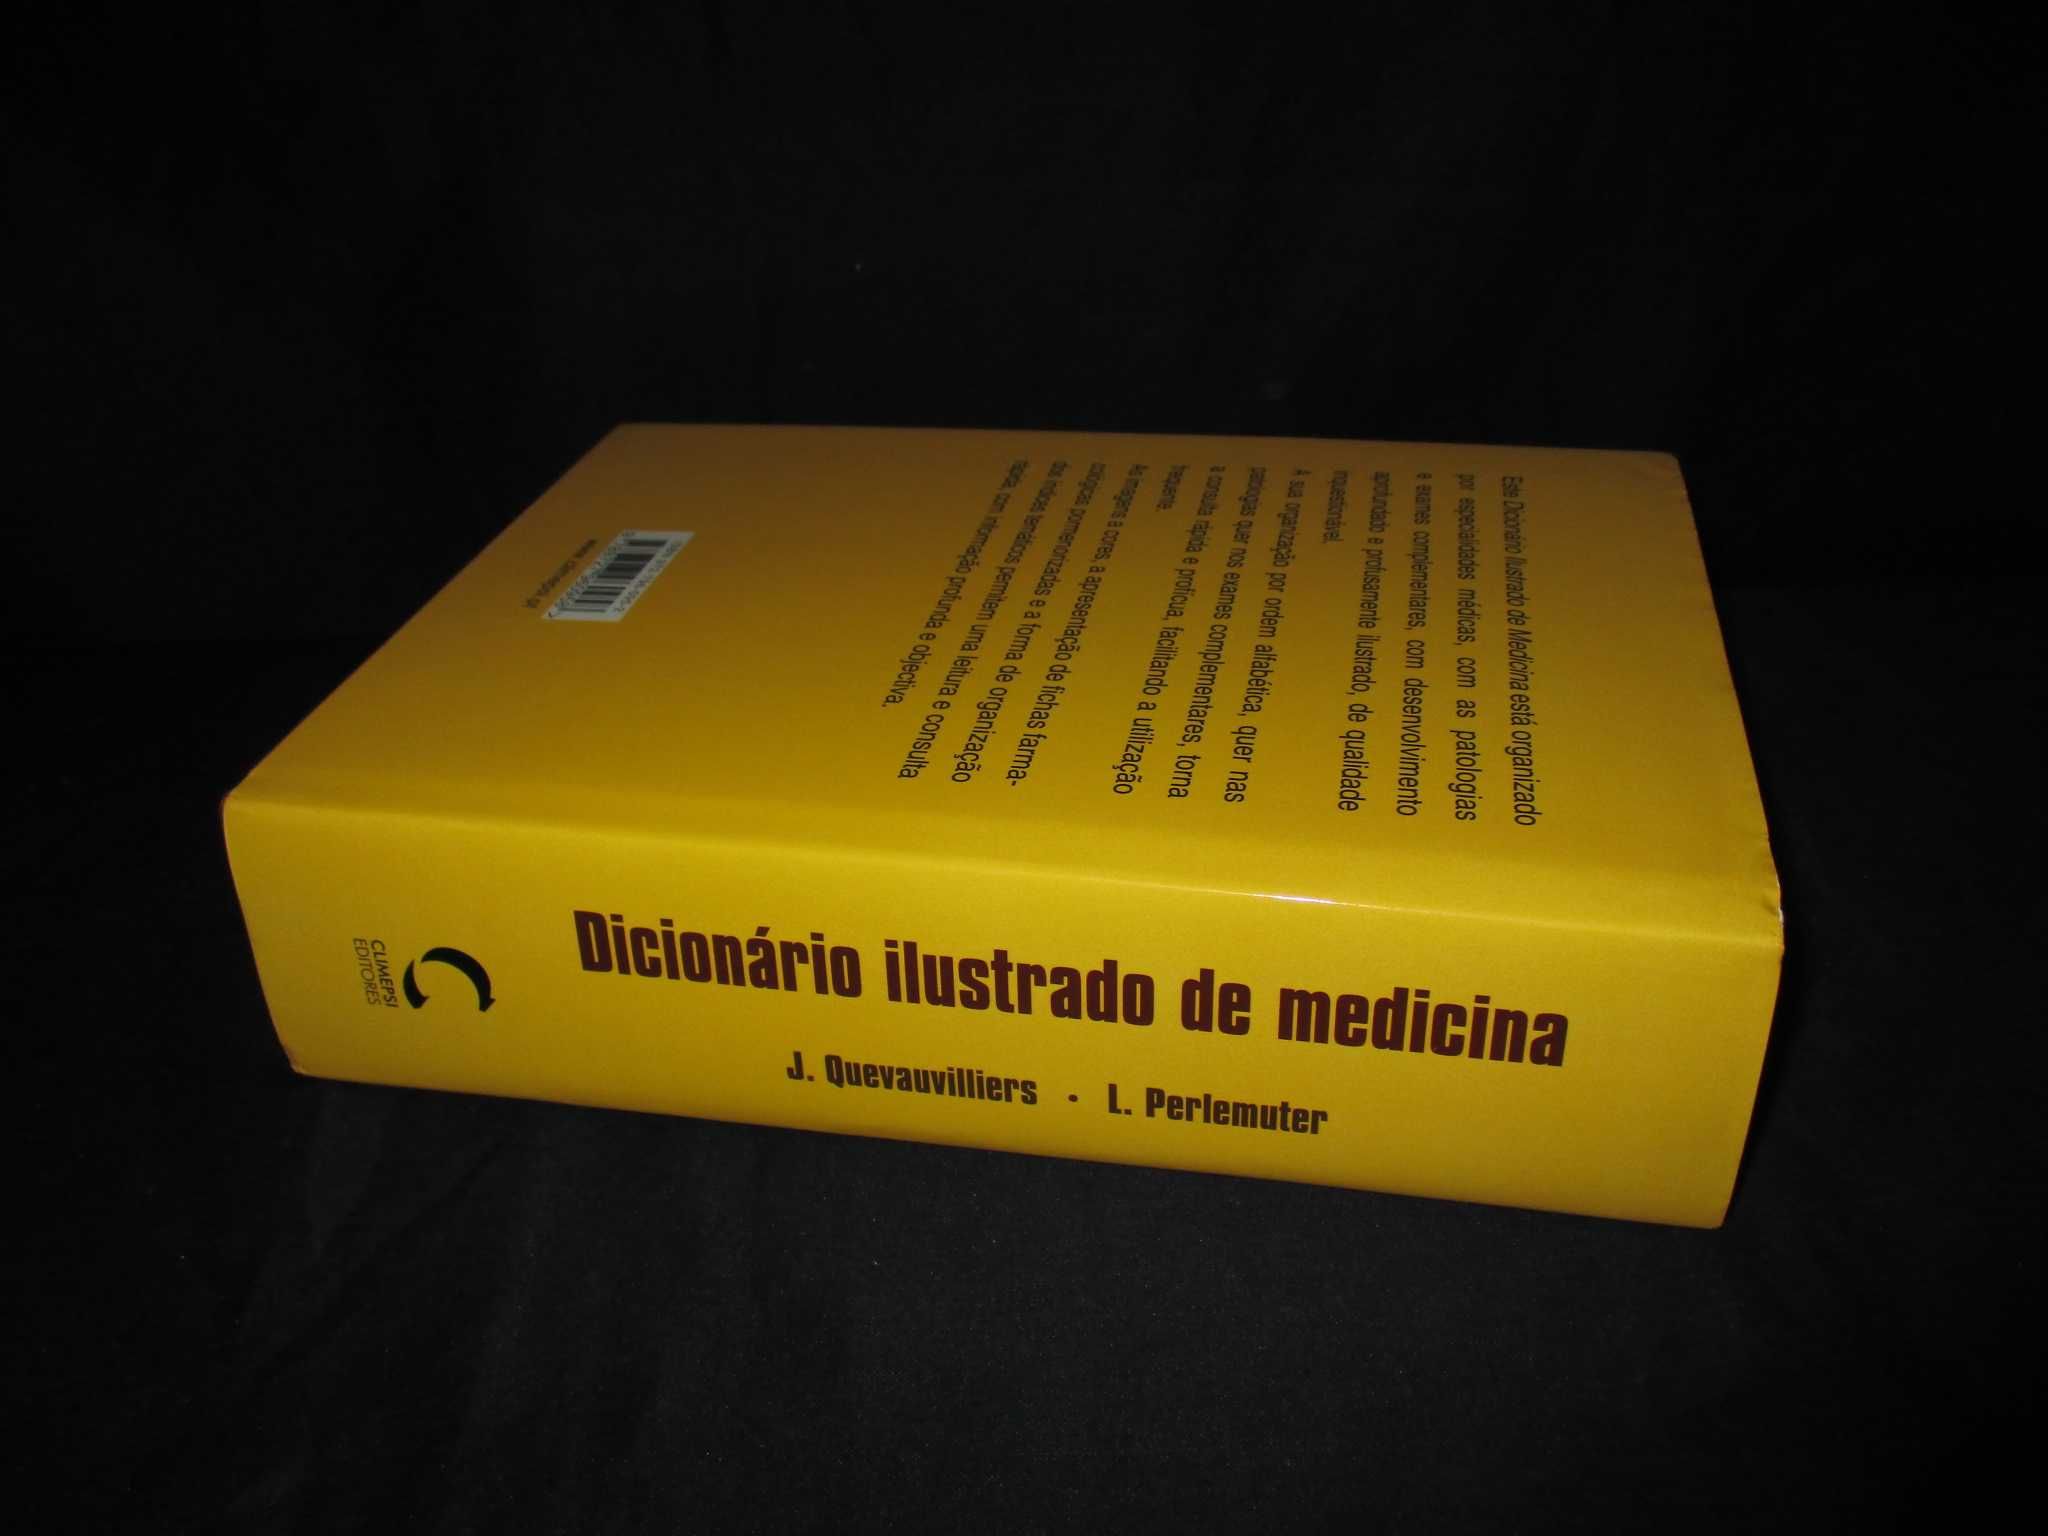 Livro Dicionário Ilustrado de Medicina Jacques Quevauvilliers Climepsi